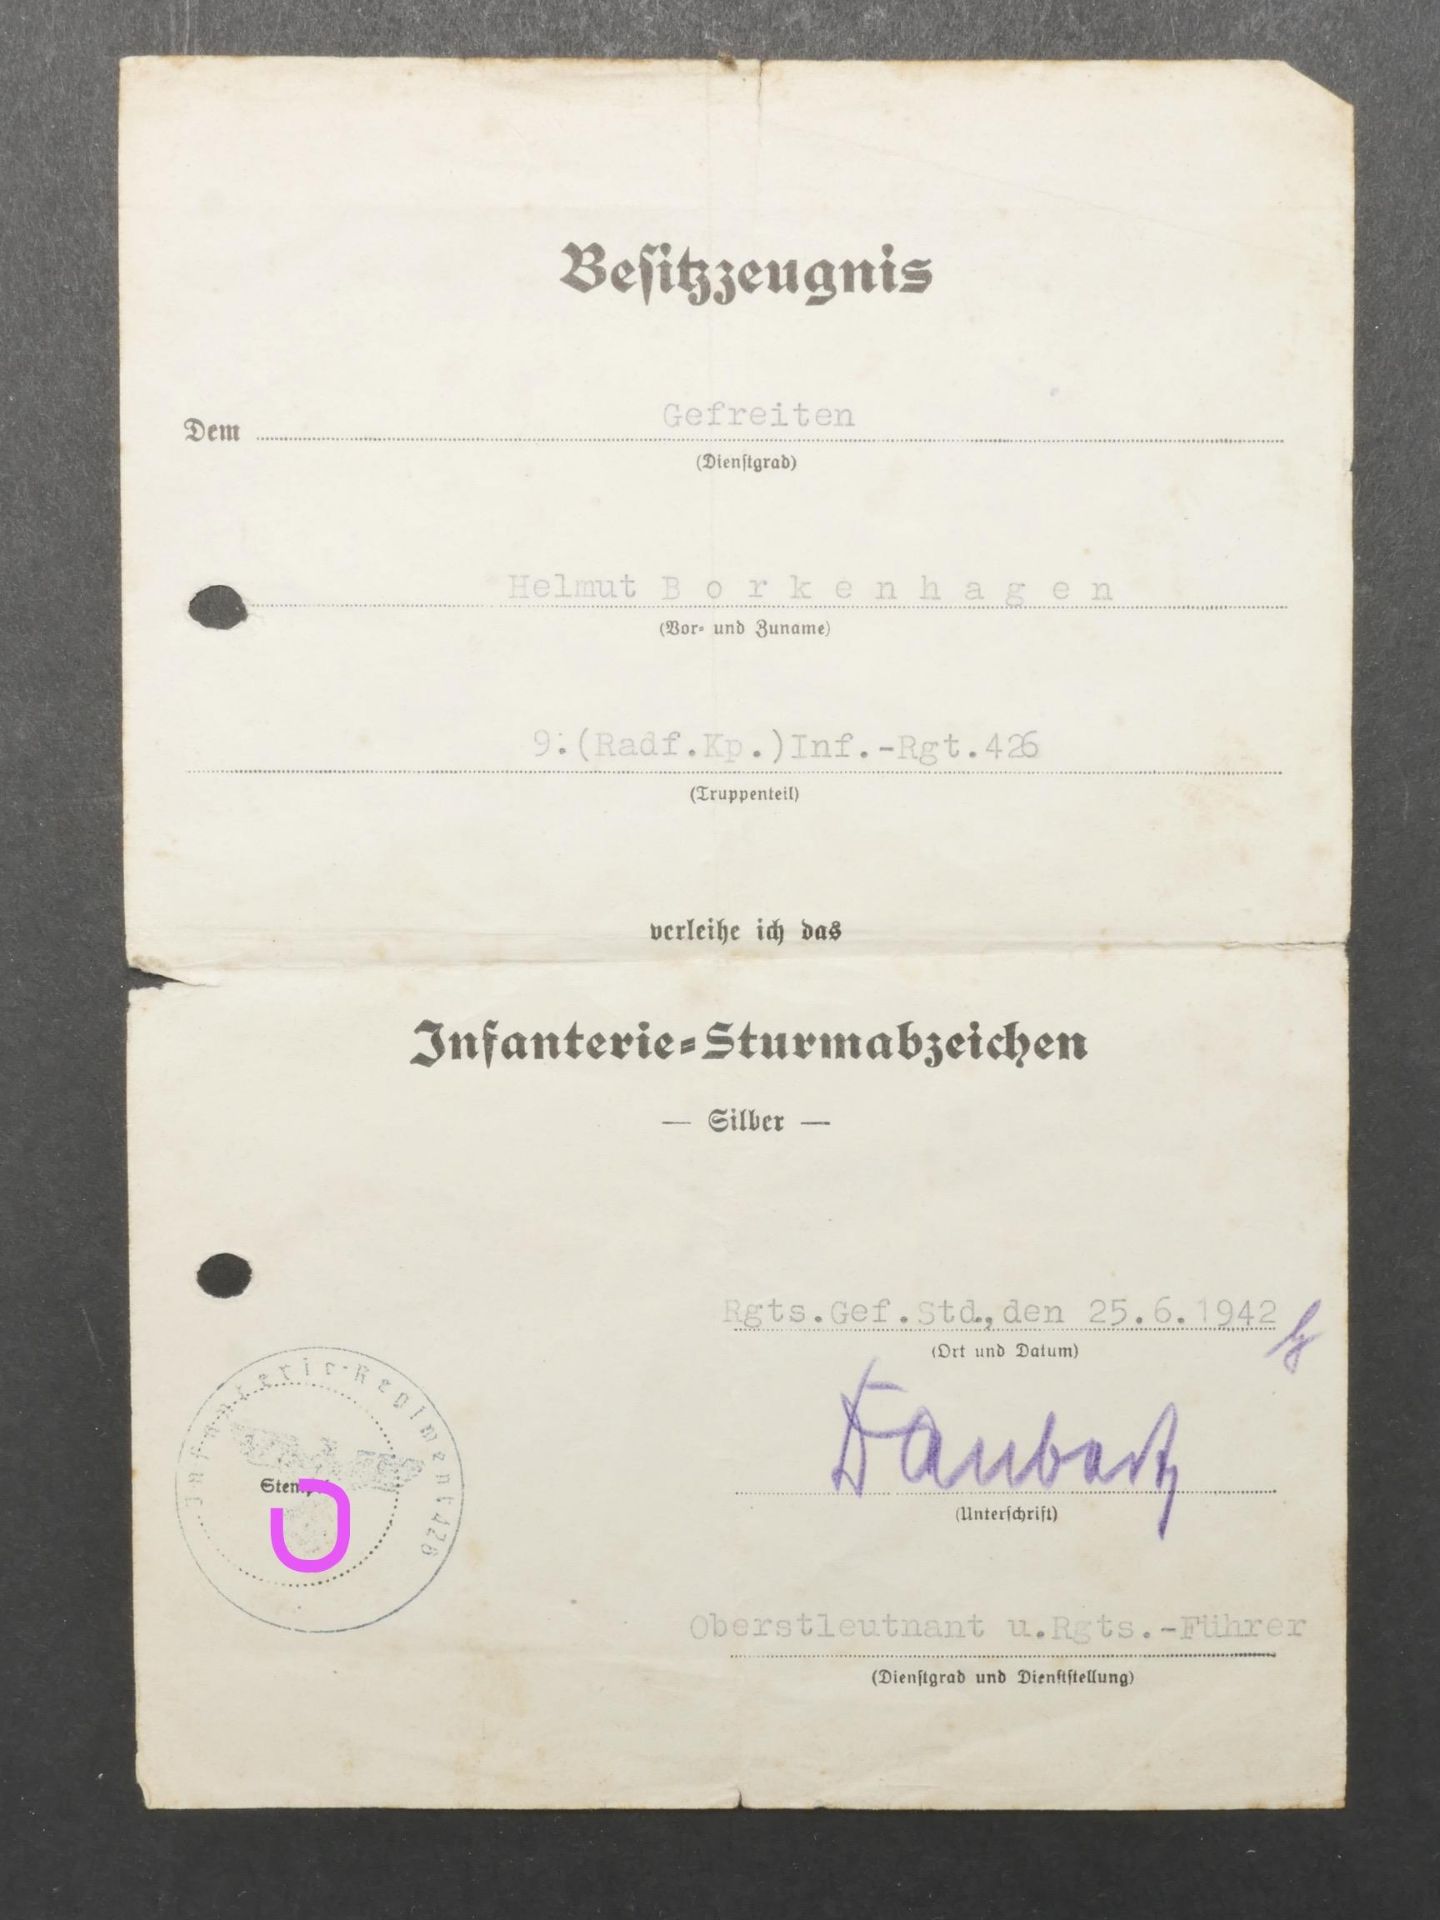 Diplome Infanterie Sturmabzeichen. Infanterie Sturmabzeichen diploma. - Bild 2 aus 5